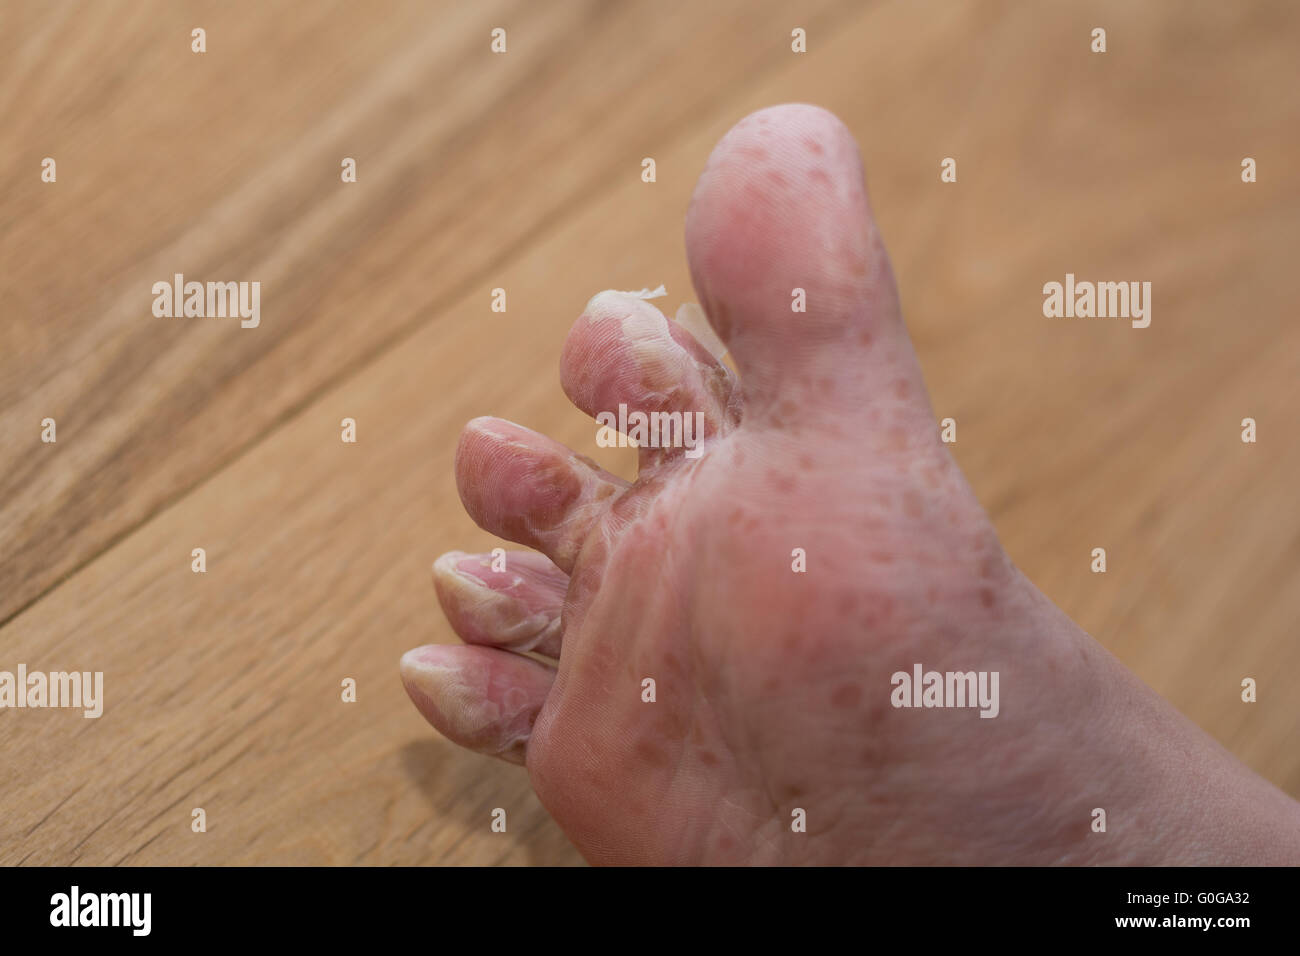 Foot molts after viral skin disease - close-up Stock Photo